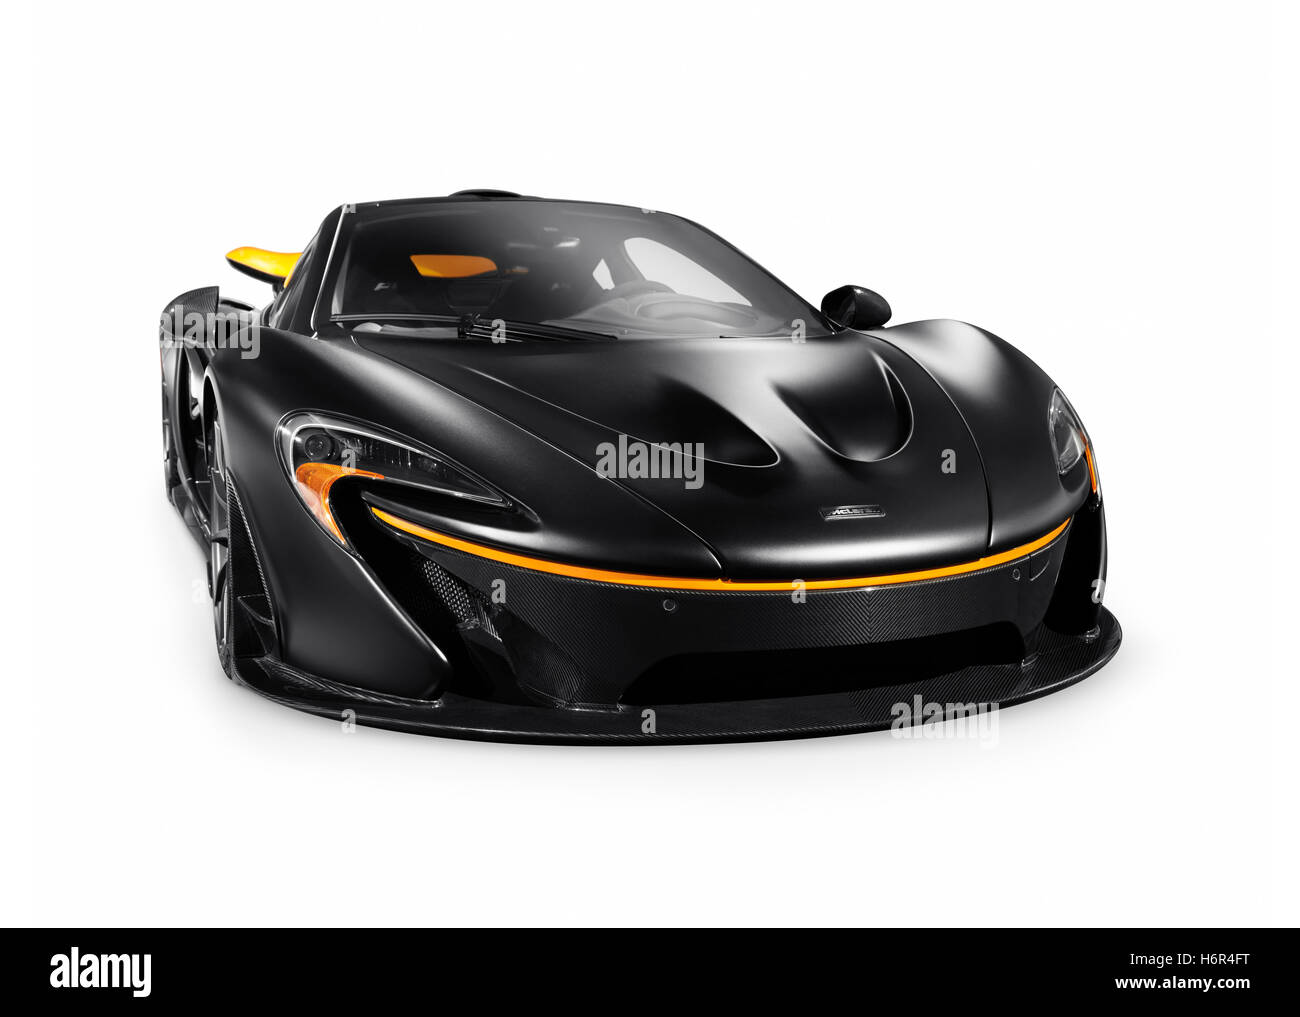 Licenza disponibile su MaximImages.com - Matte black 2015 McLaren P1 plug-in ibrido supercar auto sportiva isolata su sfondo bianco con percorso clipping Foto Stock